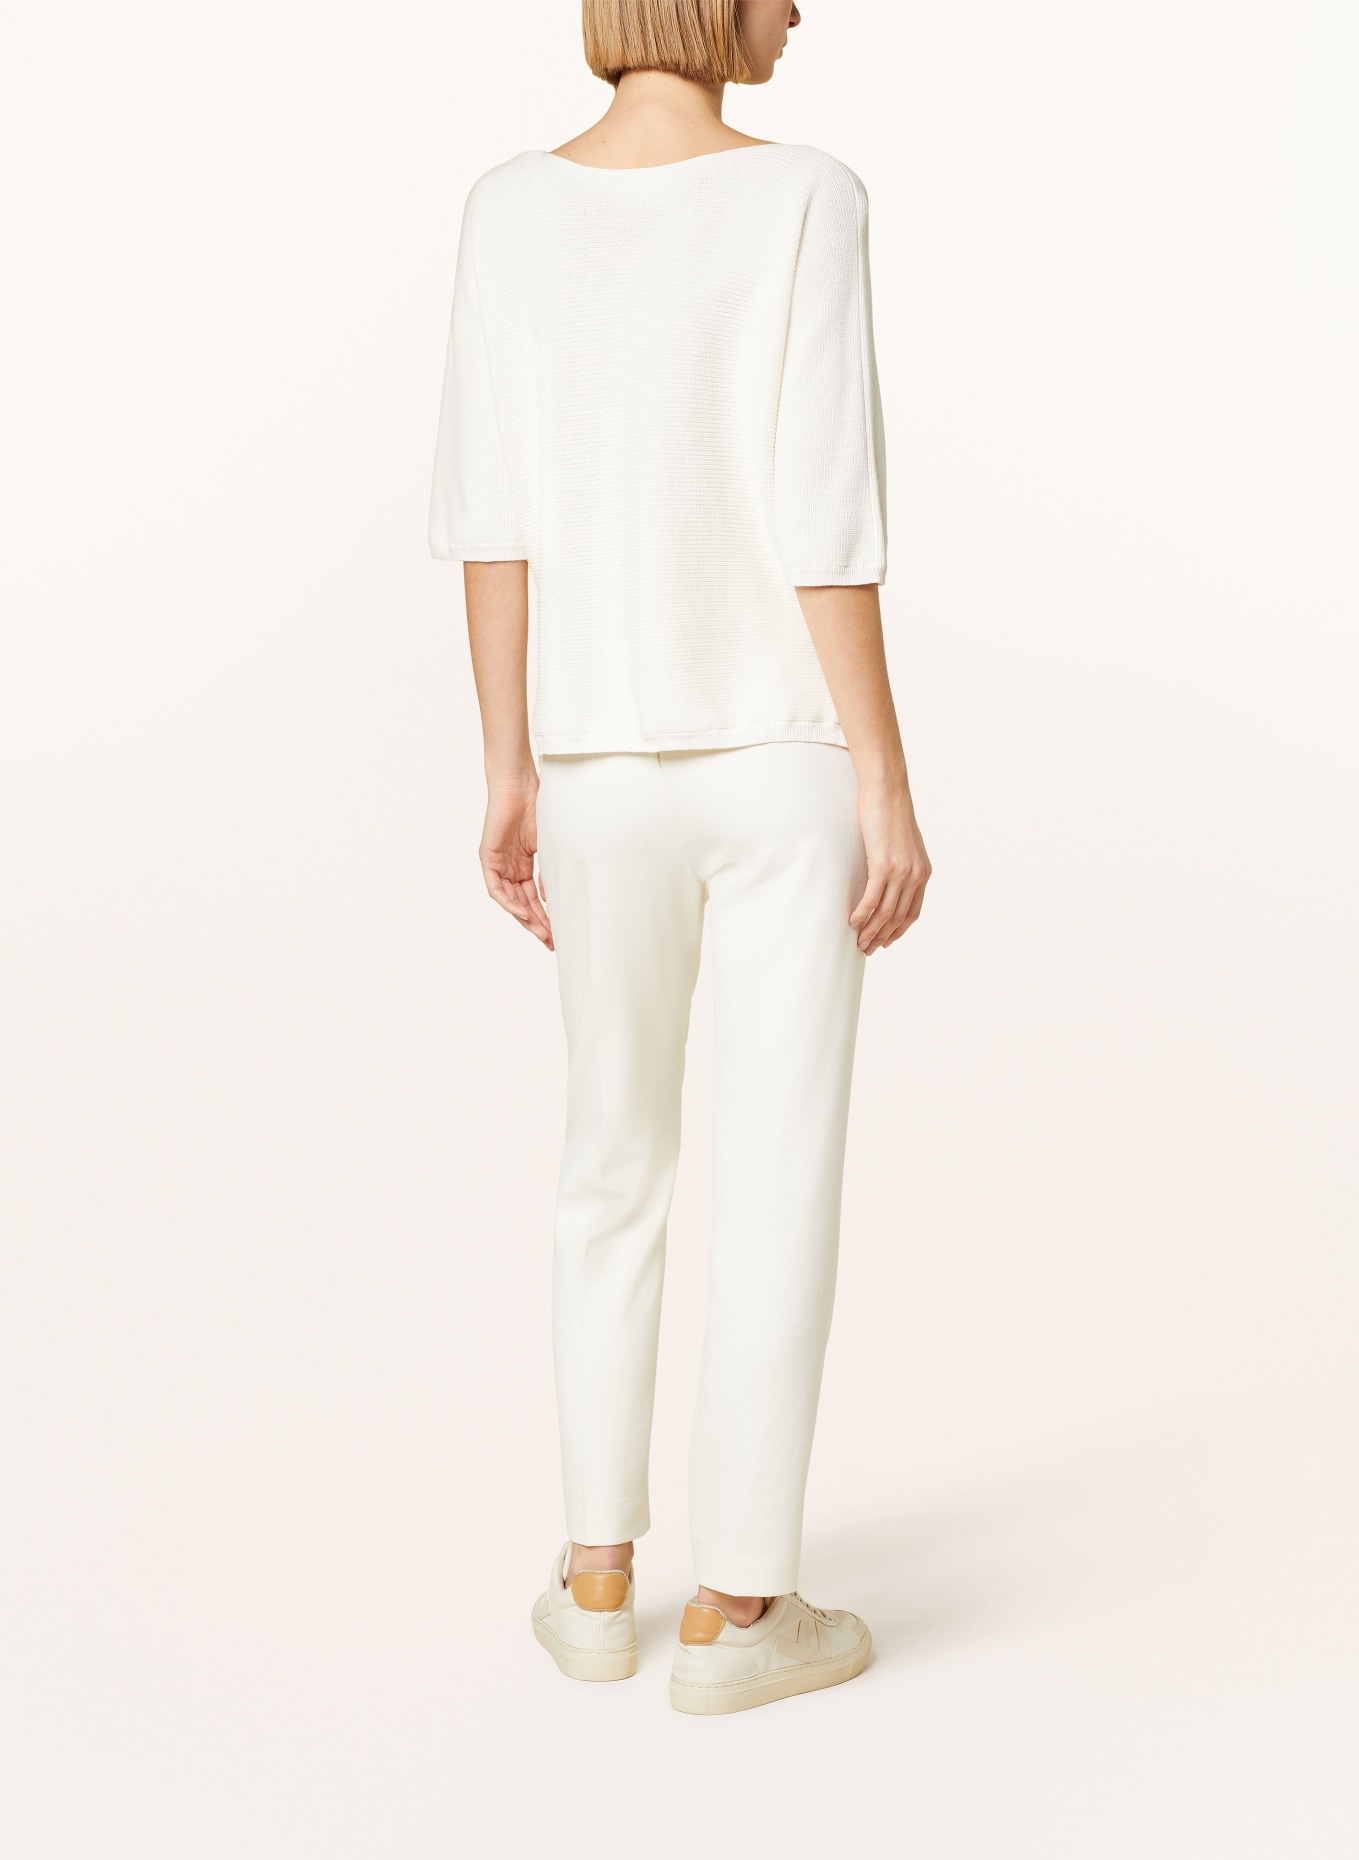 HEMISPHERE Pullover mit 3/4-Arm, Farbe: 1001 white weiss (Bild 3)